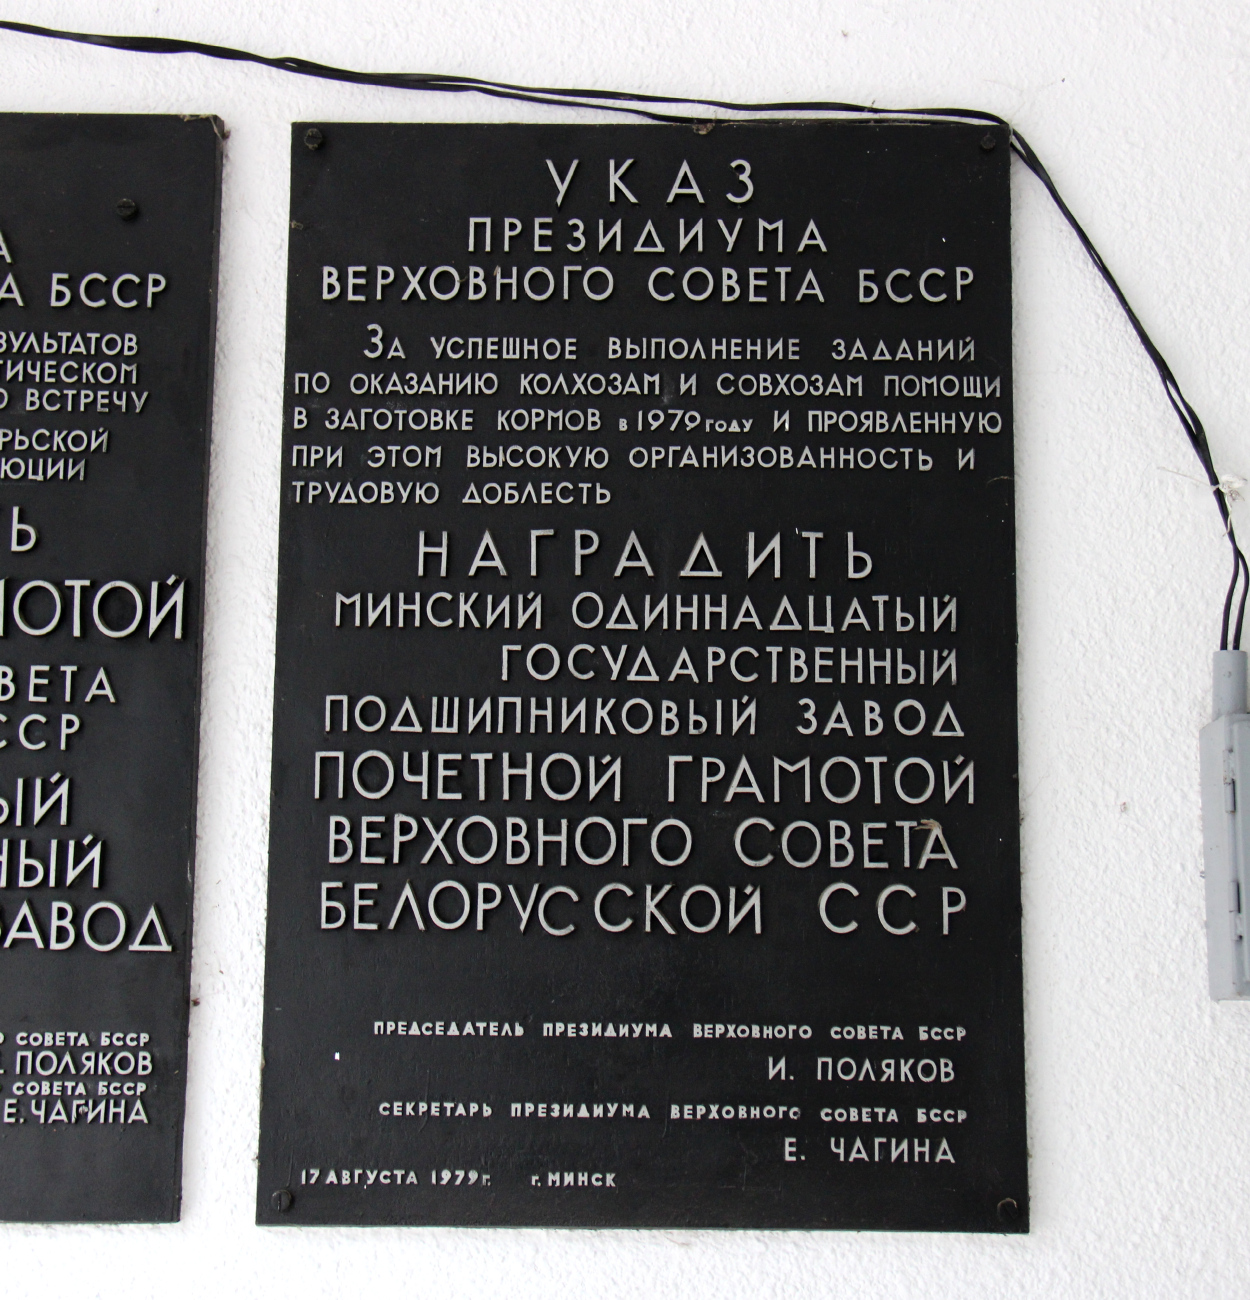 Минск, Улица Жилуновича, 2 корп. 2. Memorial plaques